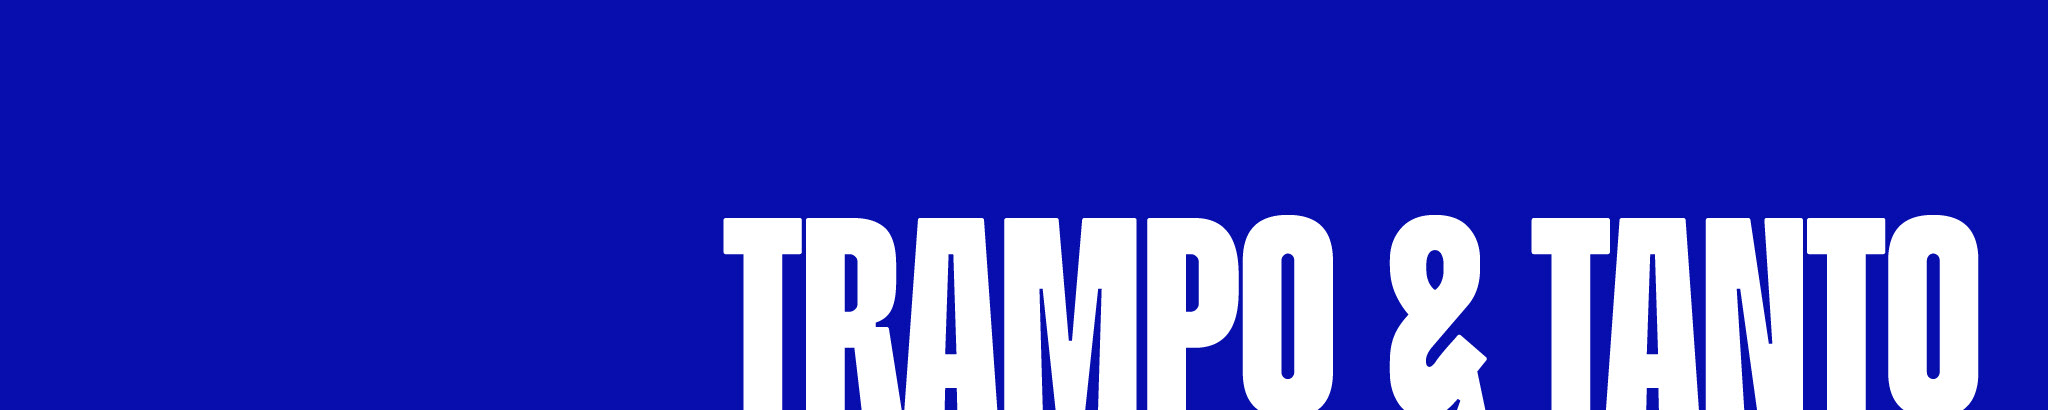 Trampo & Tanto's profile banner